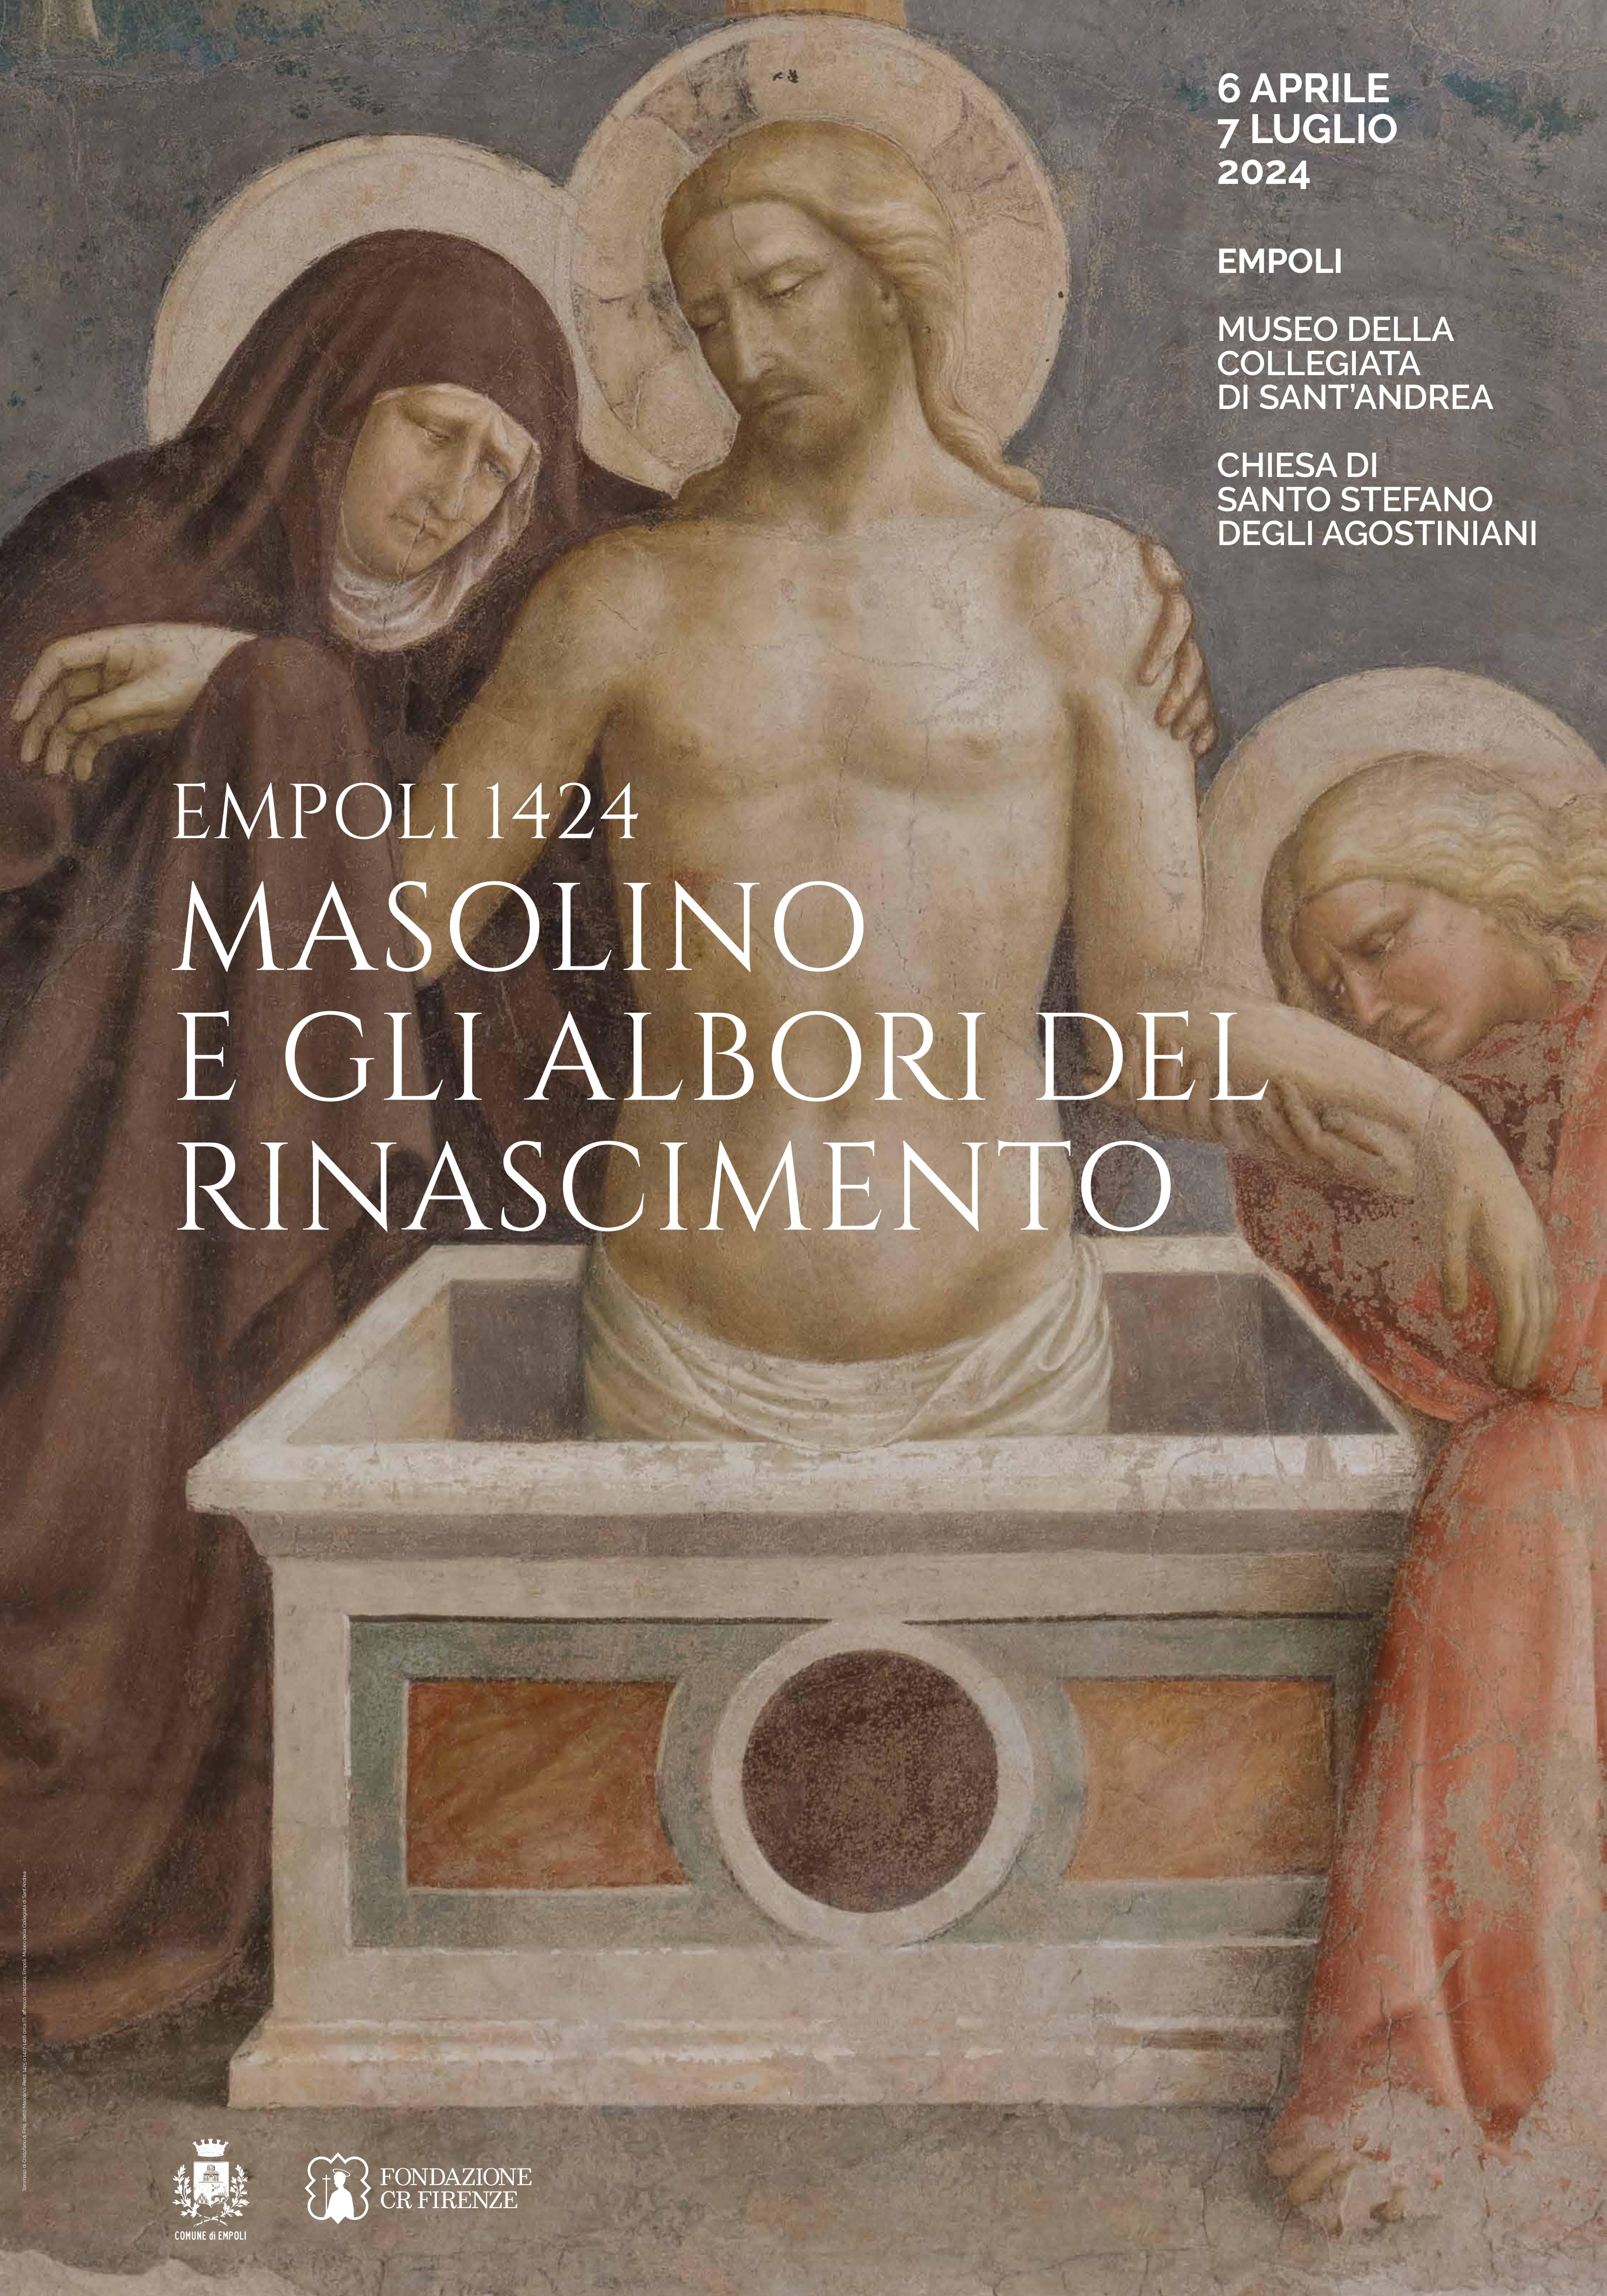 Empoli 1424. Masolino and the Dawn of the Renaissance - exhibition